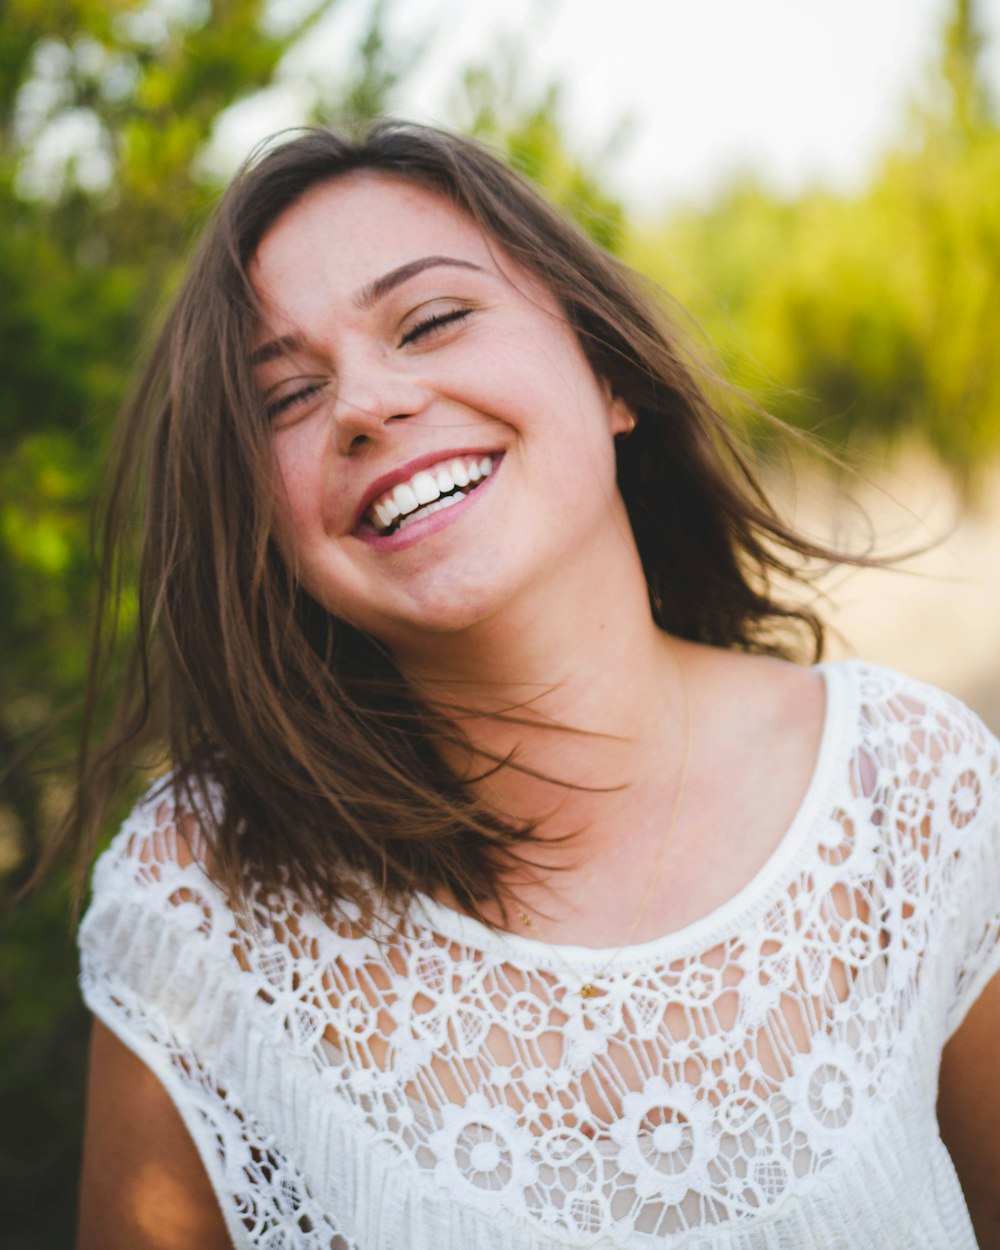 woman smiling wearing white top